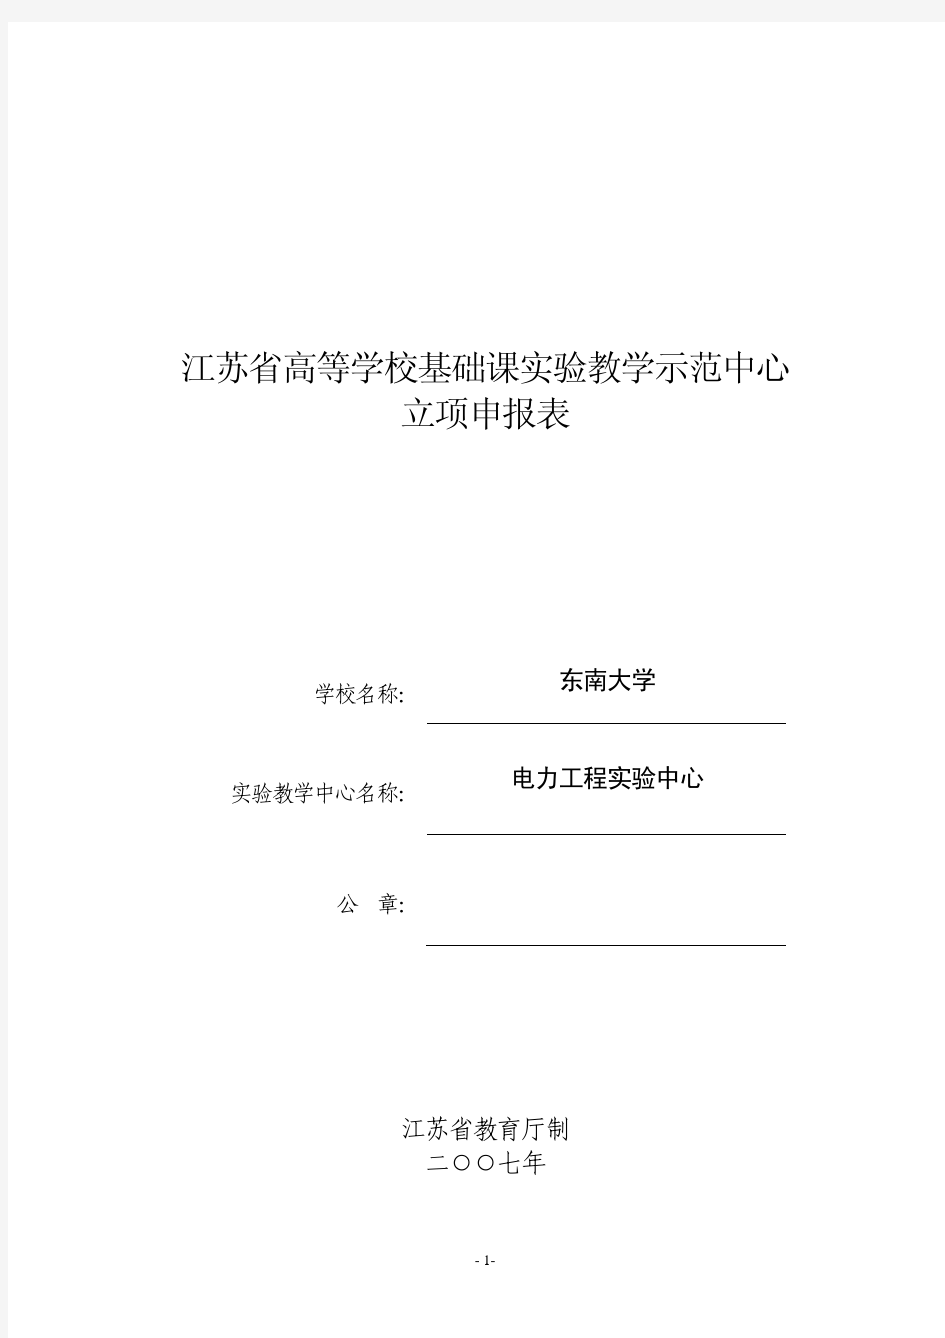 江苏省高等学校基础课实验教学示范中心 立项申报表